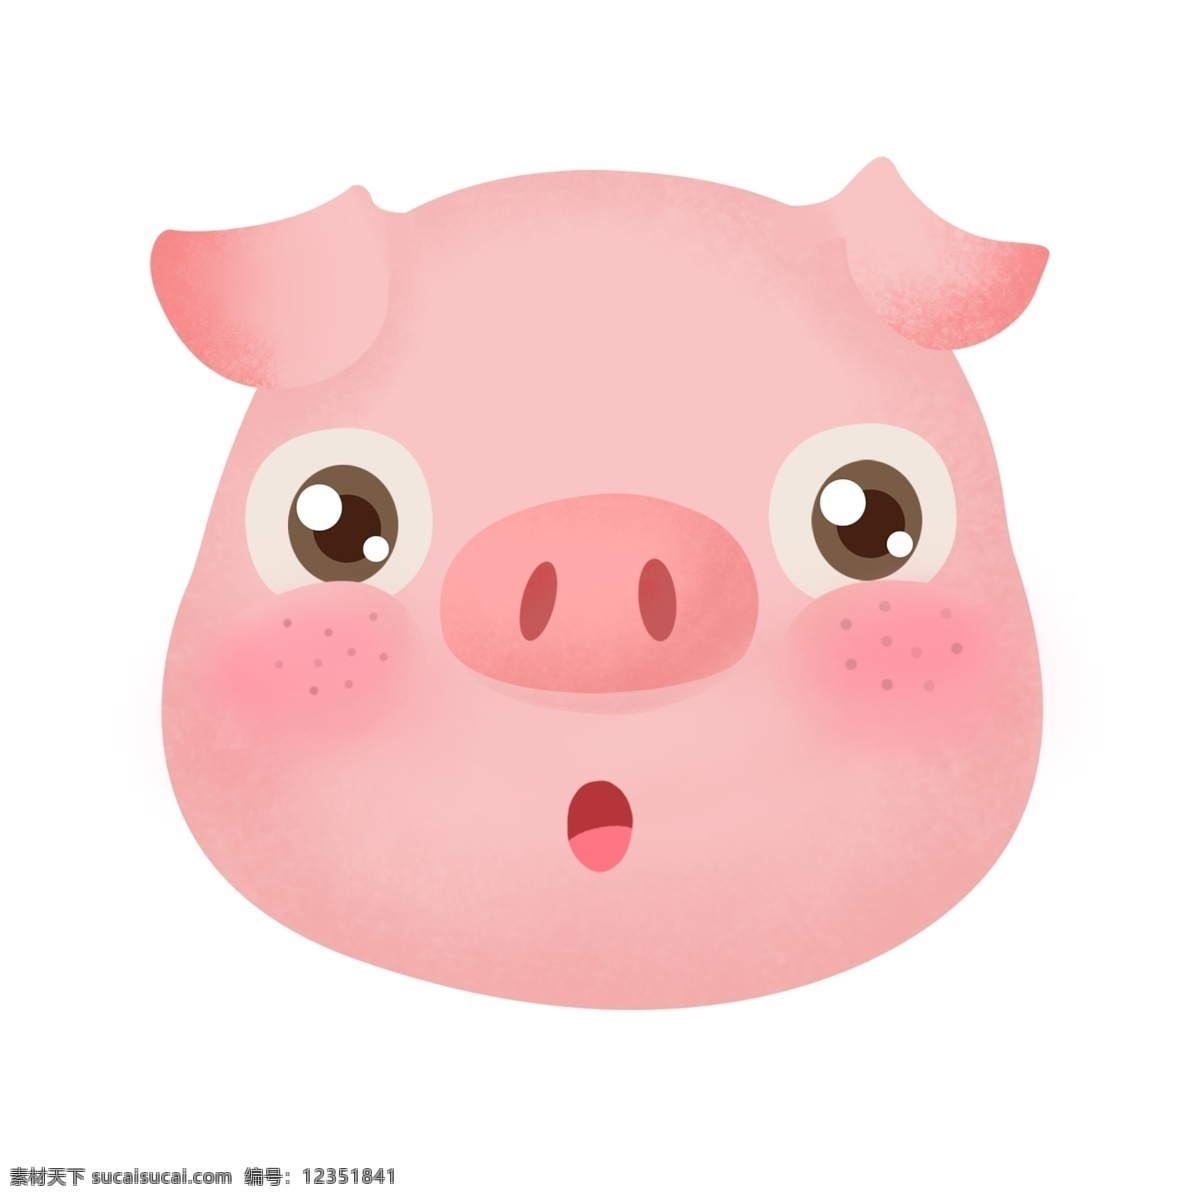 可爱 萌 哒 猪头 卡通 手绘 大眼 腮红 斑点猪 目瞪口呆猪 插画 萌萌哒 粉色猪猪 头像 装饰图案